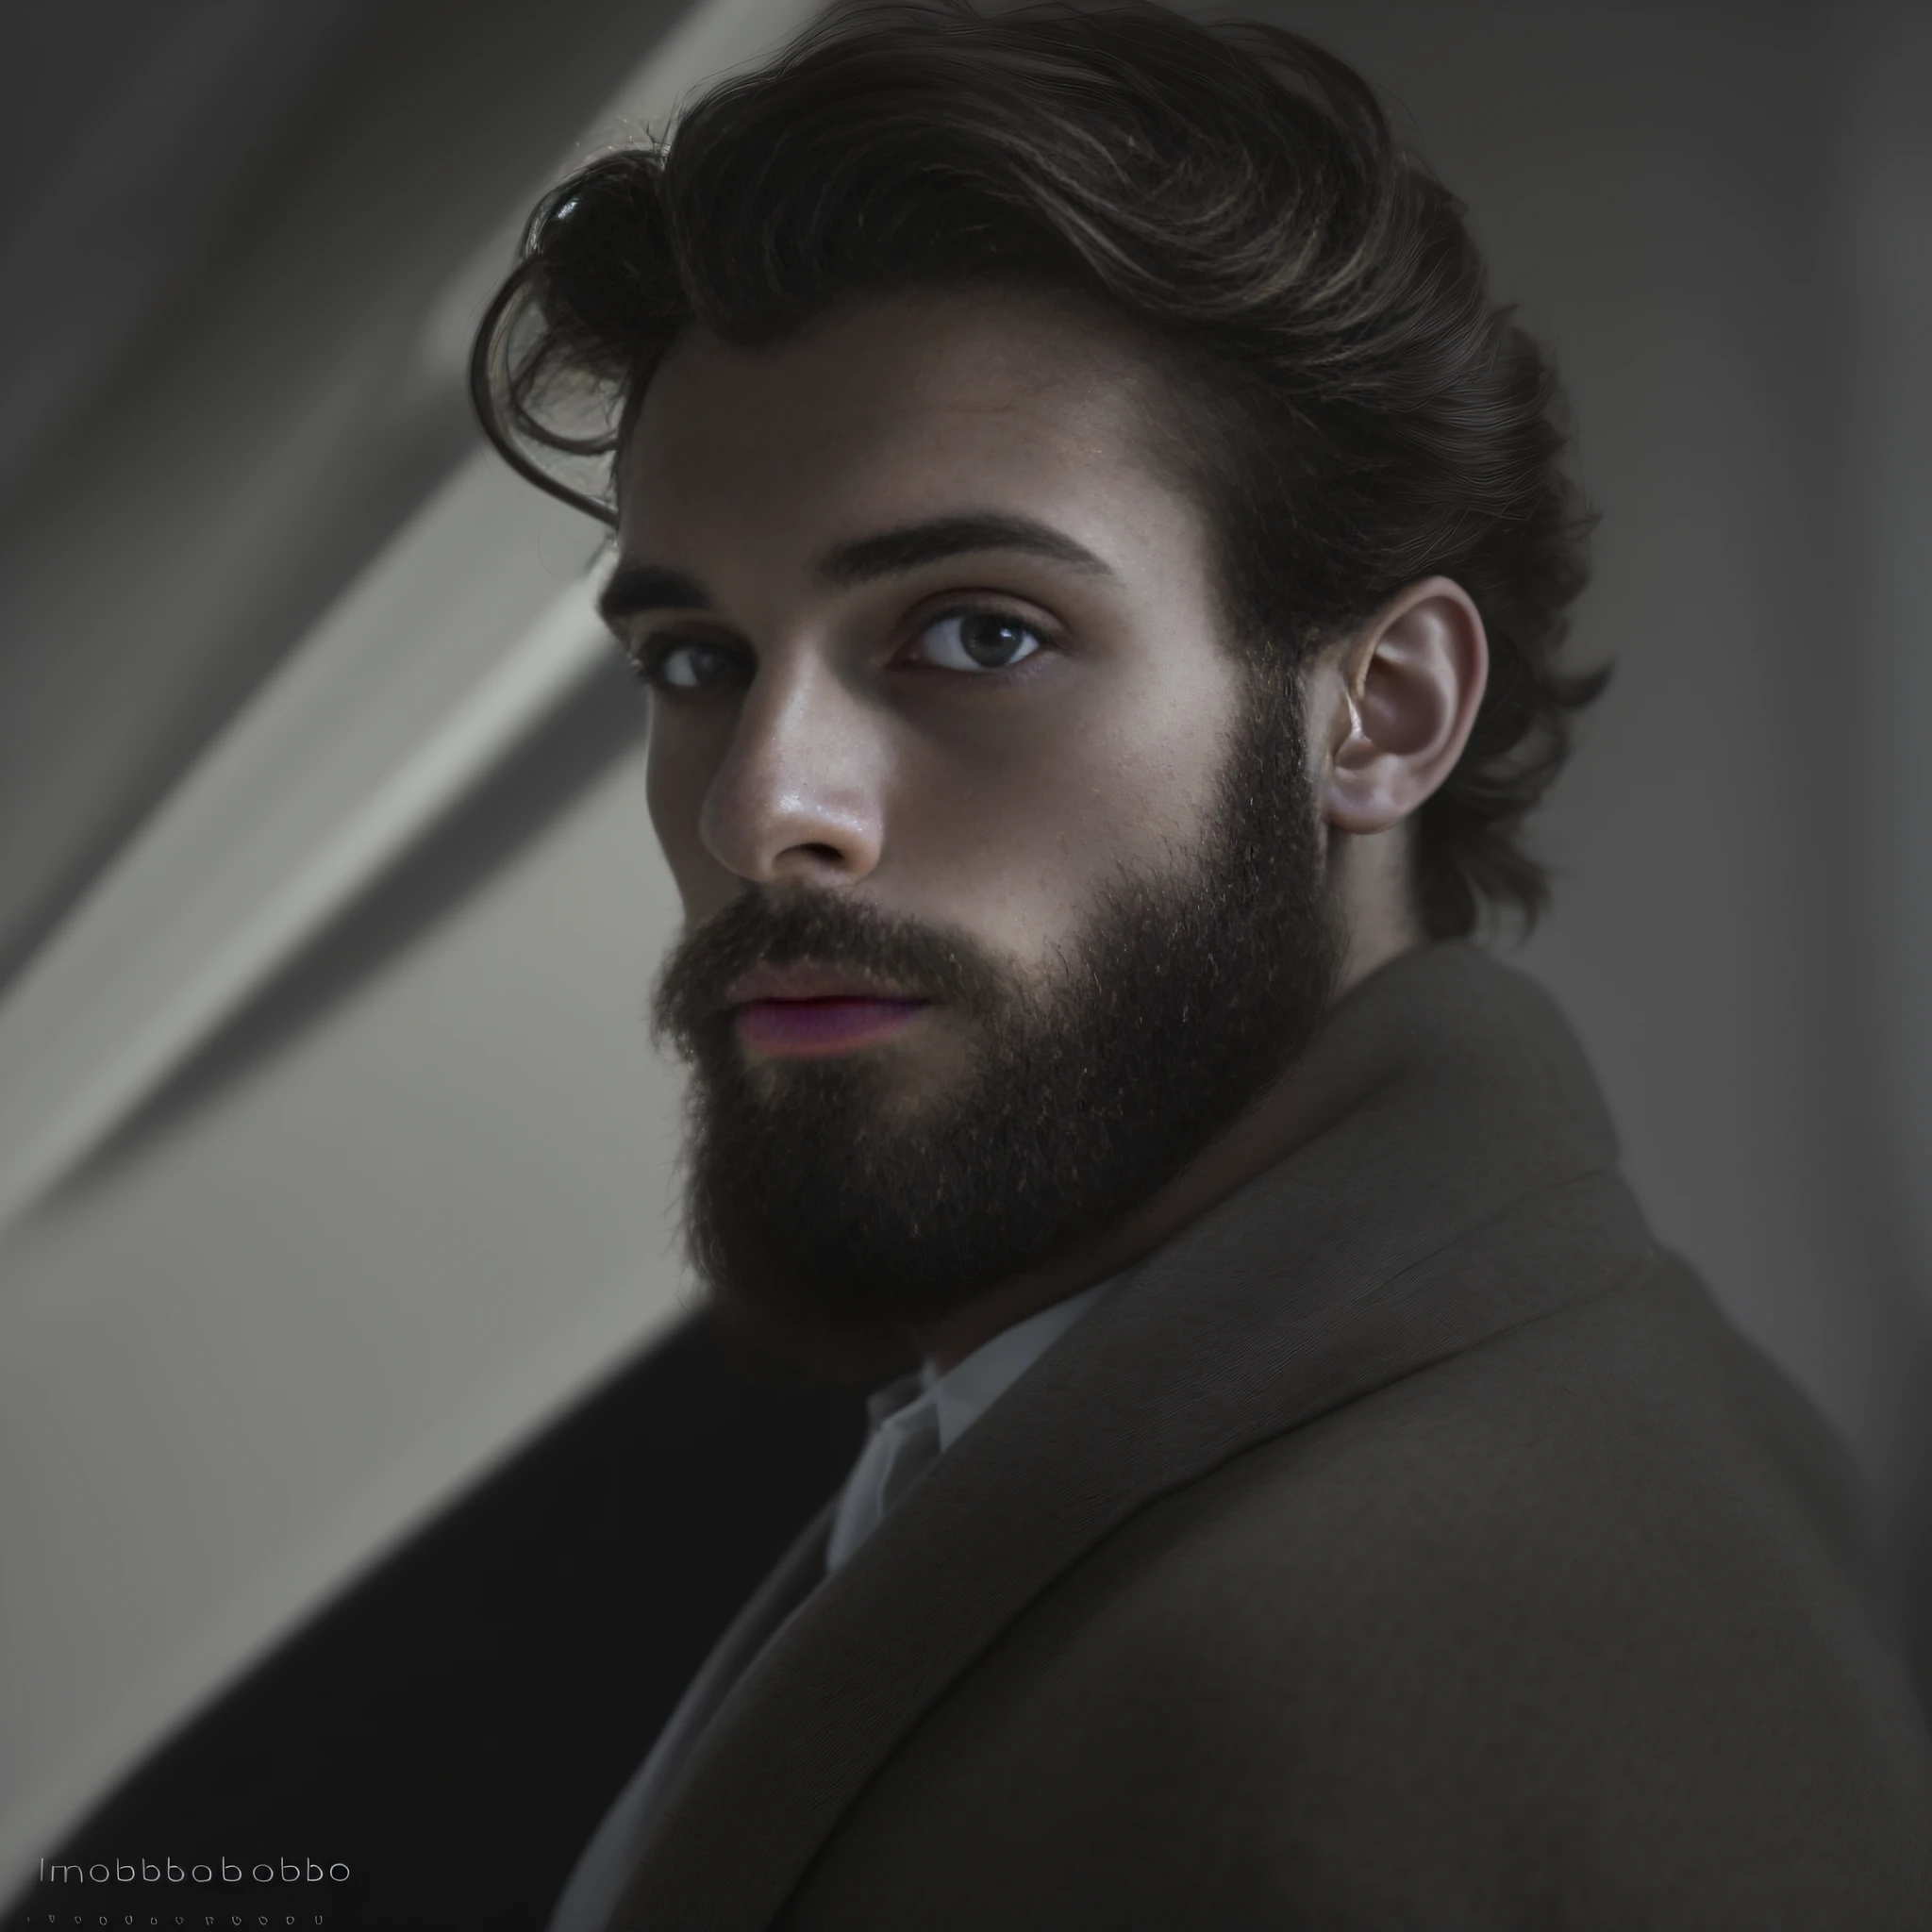 23-летний мужчина из Бельгии., мужской род, бородатый, ключевая борода, модель, все тело, элегантная поза, очень красивый, глядя в камеру, детальное изображение, UHD, 8К, хорошо освещенный, зерно пленки, идеальное освещение